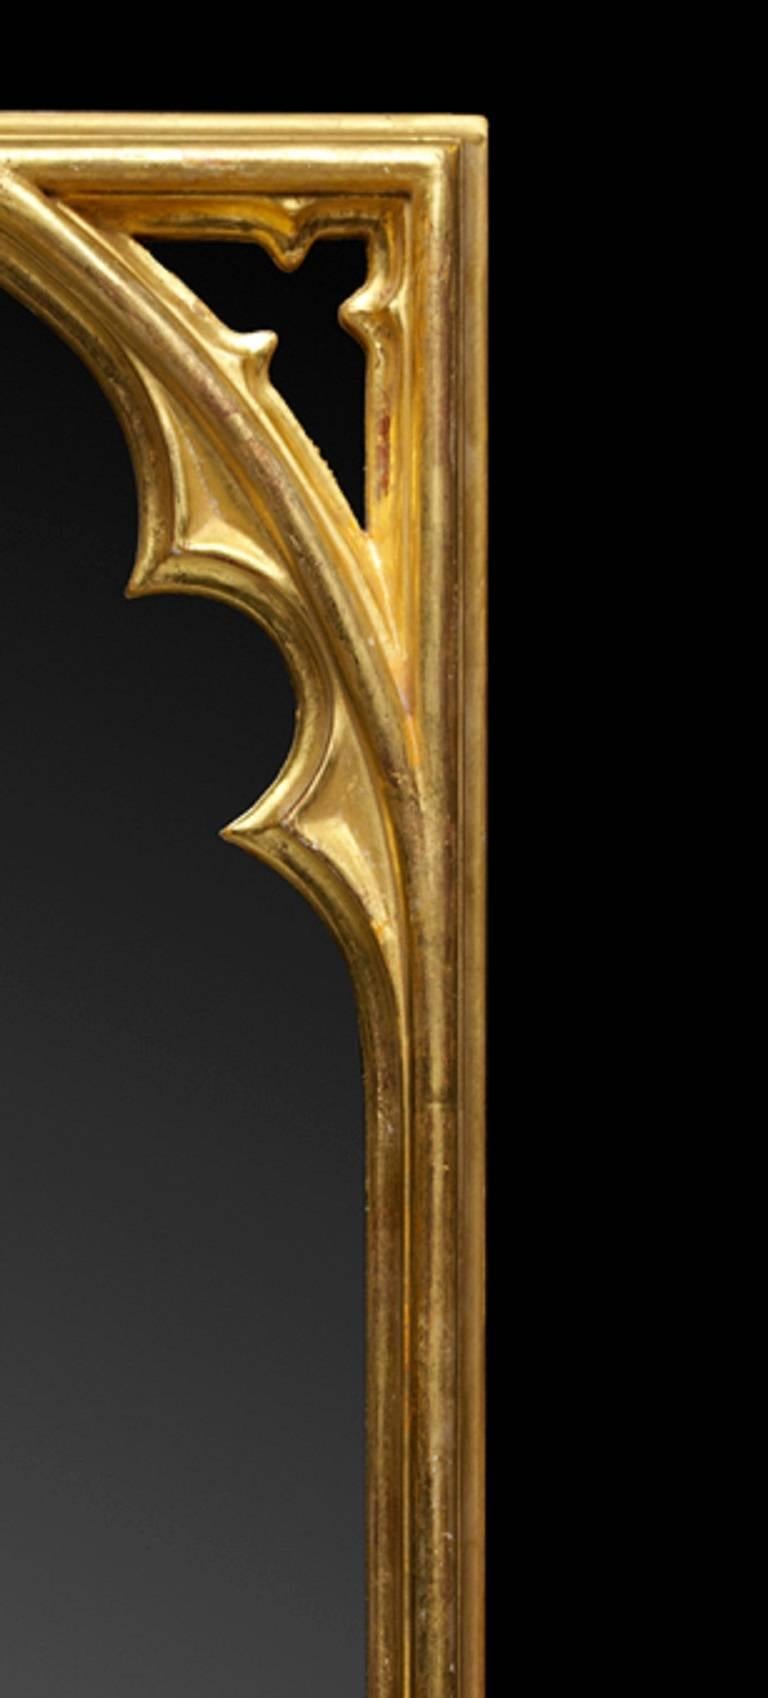 Ein Paar rechteckige, geschnitzte Spiegel aus vergoldetem Holz im gotischen Stil, inspiriert durch den Stil und die Dekoration der Long Gallery in Strawberry Hill.

Wir arbeiten derzeit mit einer Vorlaufzeit von 30-36 Wochen.